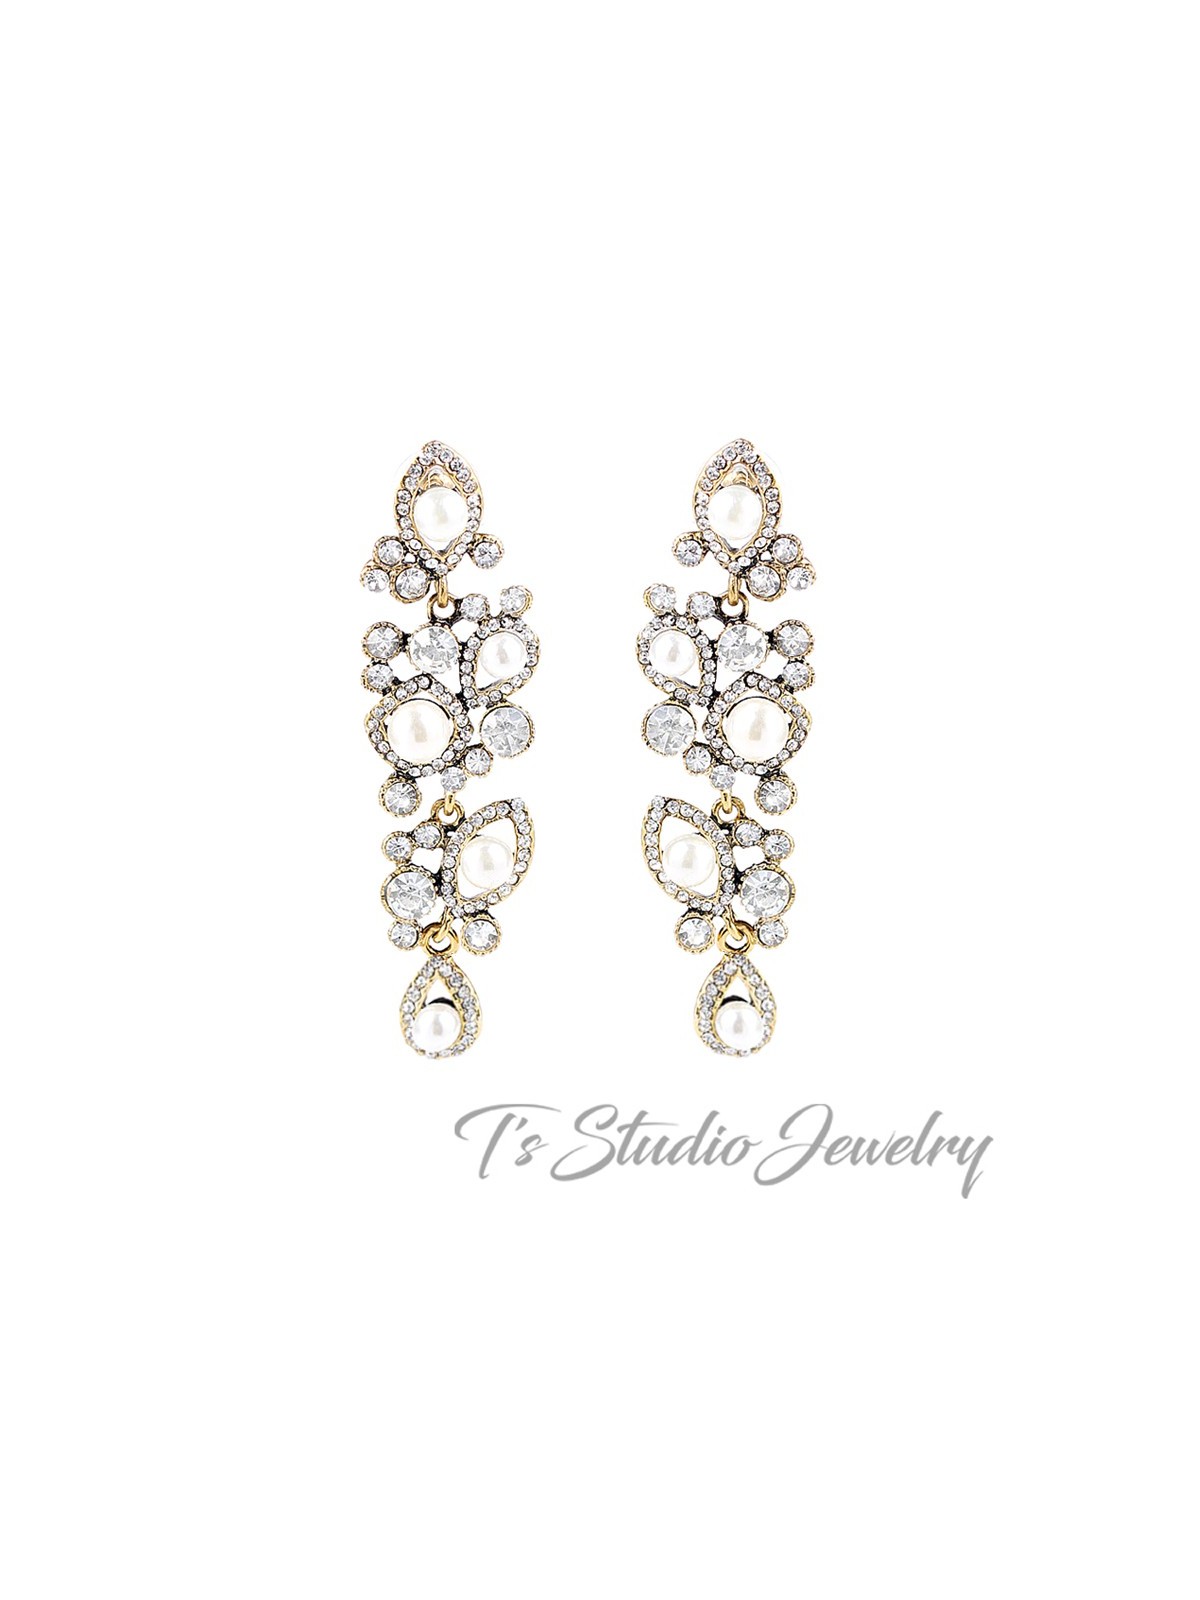 Long Gold Pearl & Crystal Wedding Earrings